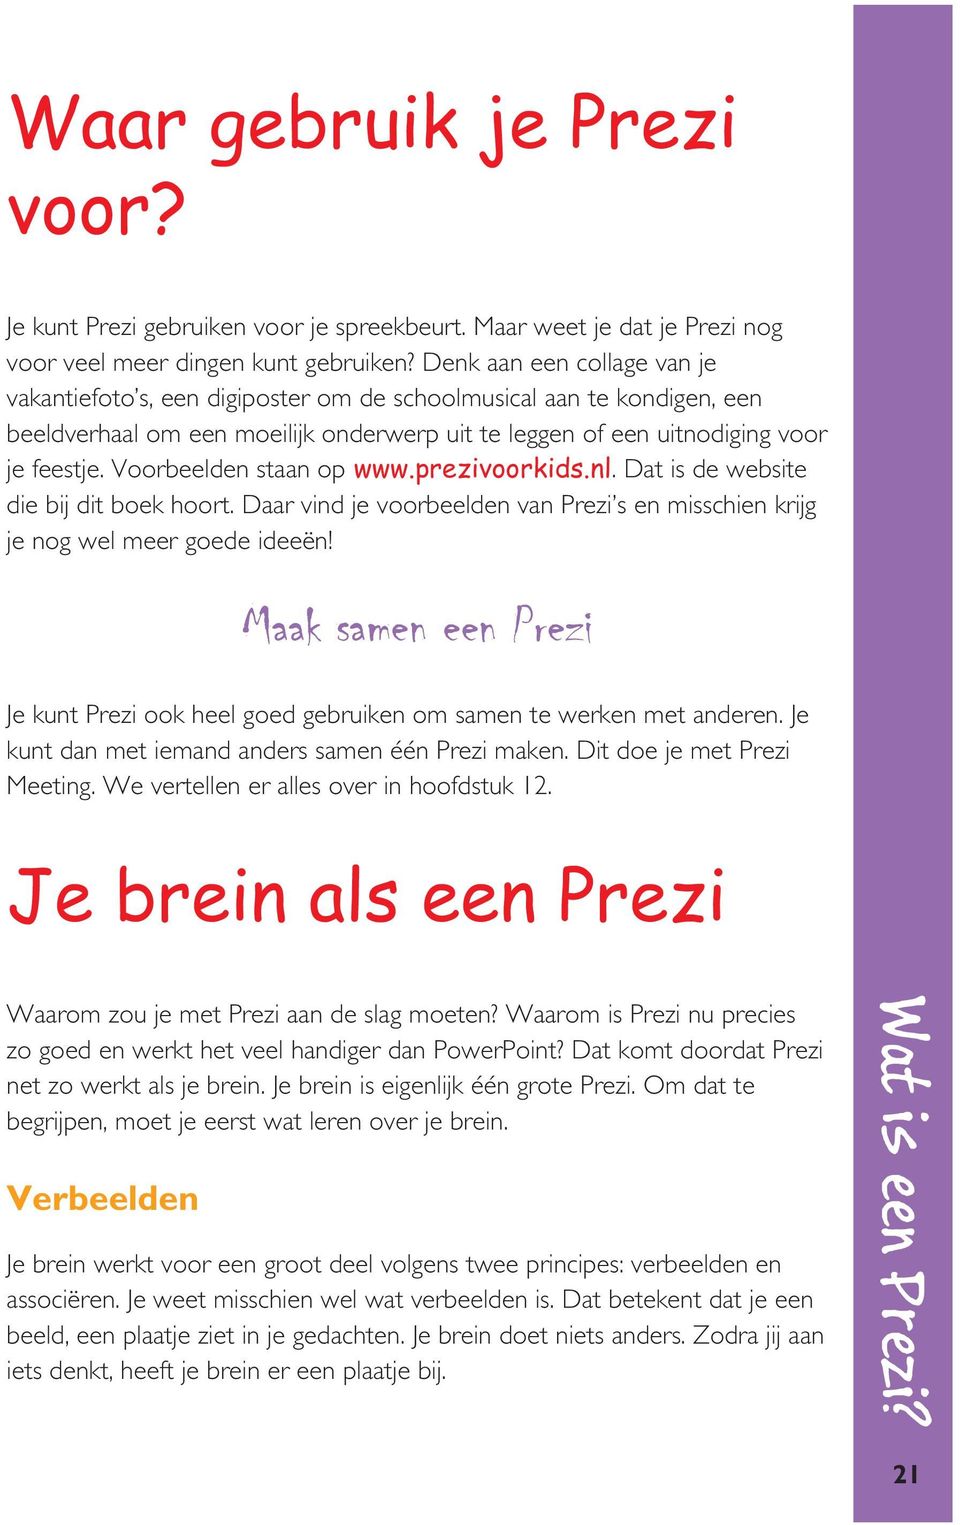 Voorbeelden staan op www.prezivoorkids.nl. Dat is de website die bij dit boek hoort. Daar vind je voorbeelden van Prezi s en misschien krijg je nog wel meer goede ideeën!